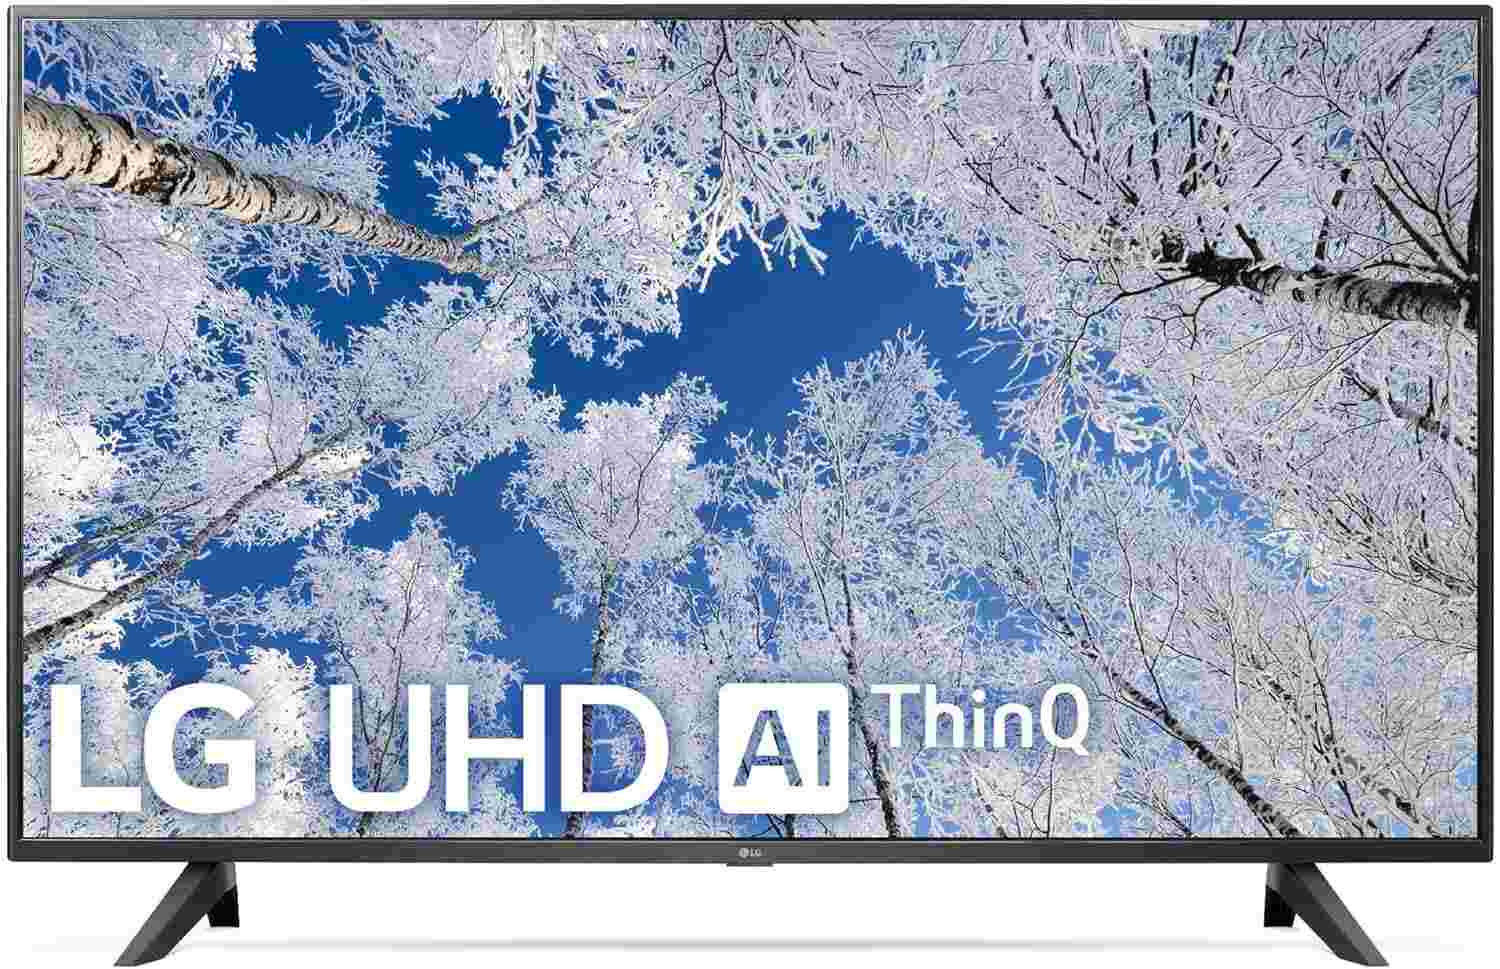 LG TV 55 POUCES SMART - UHD 4K - ACTIVE -HDR- WEBOS SMART THINQ AI - 6 MOIS DE GARANTIE